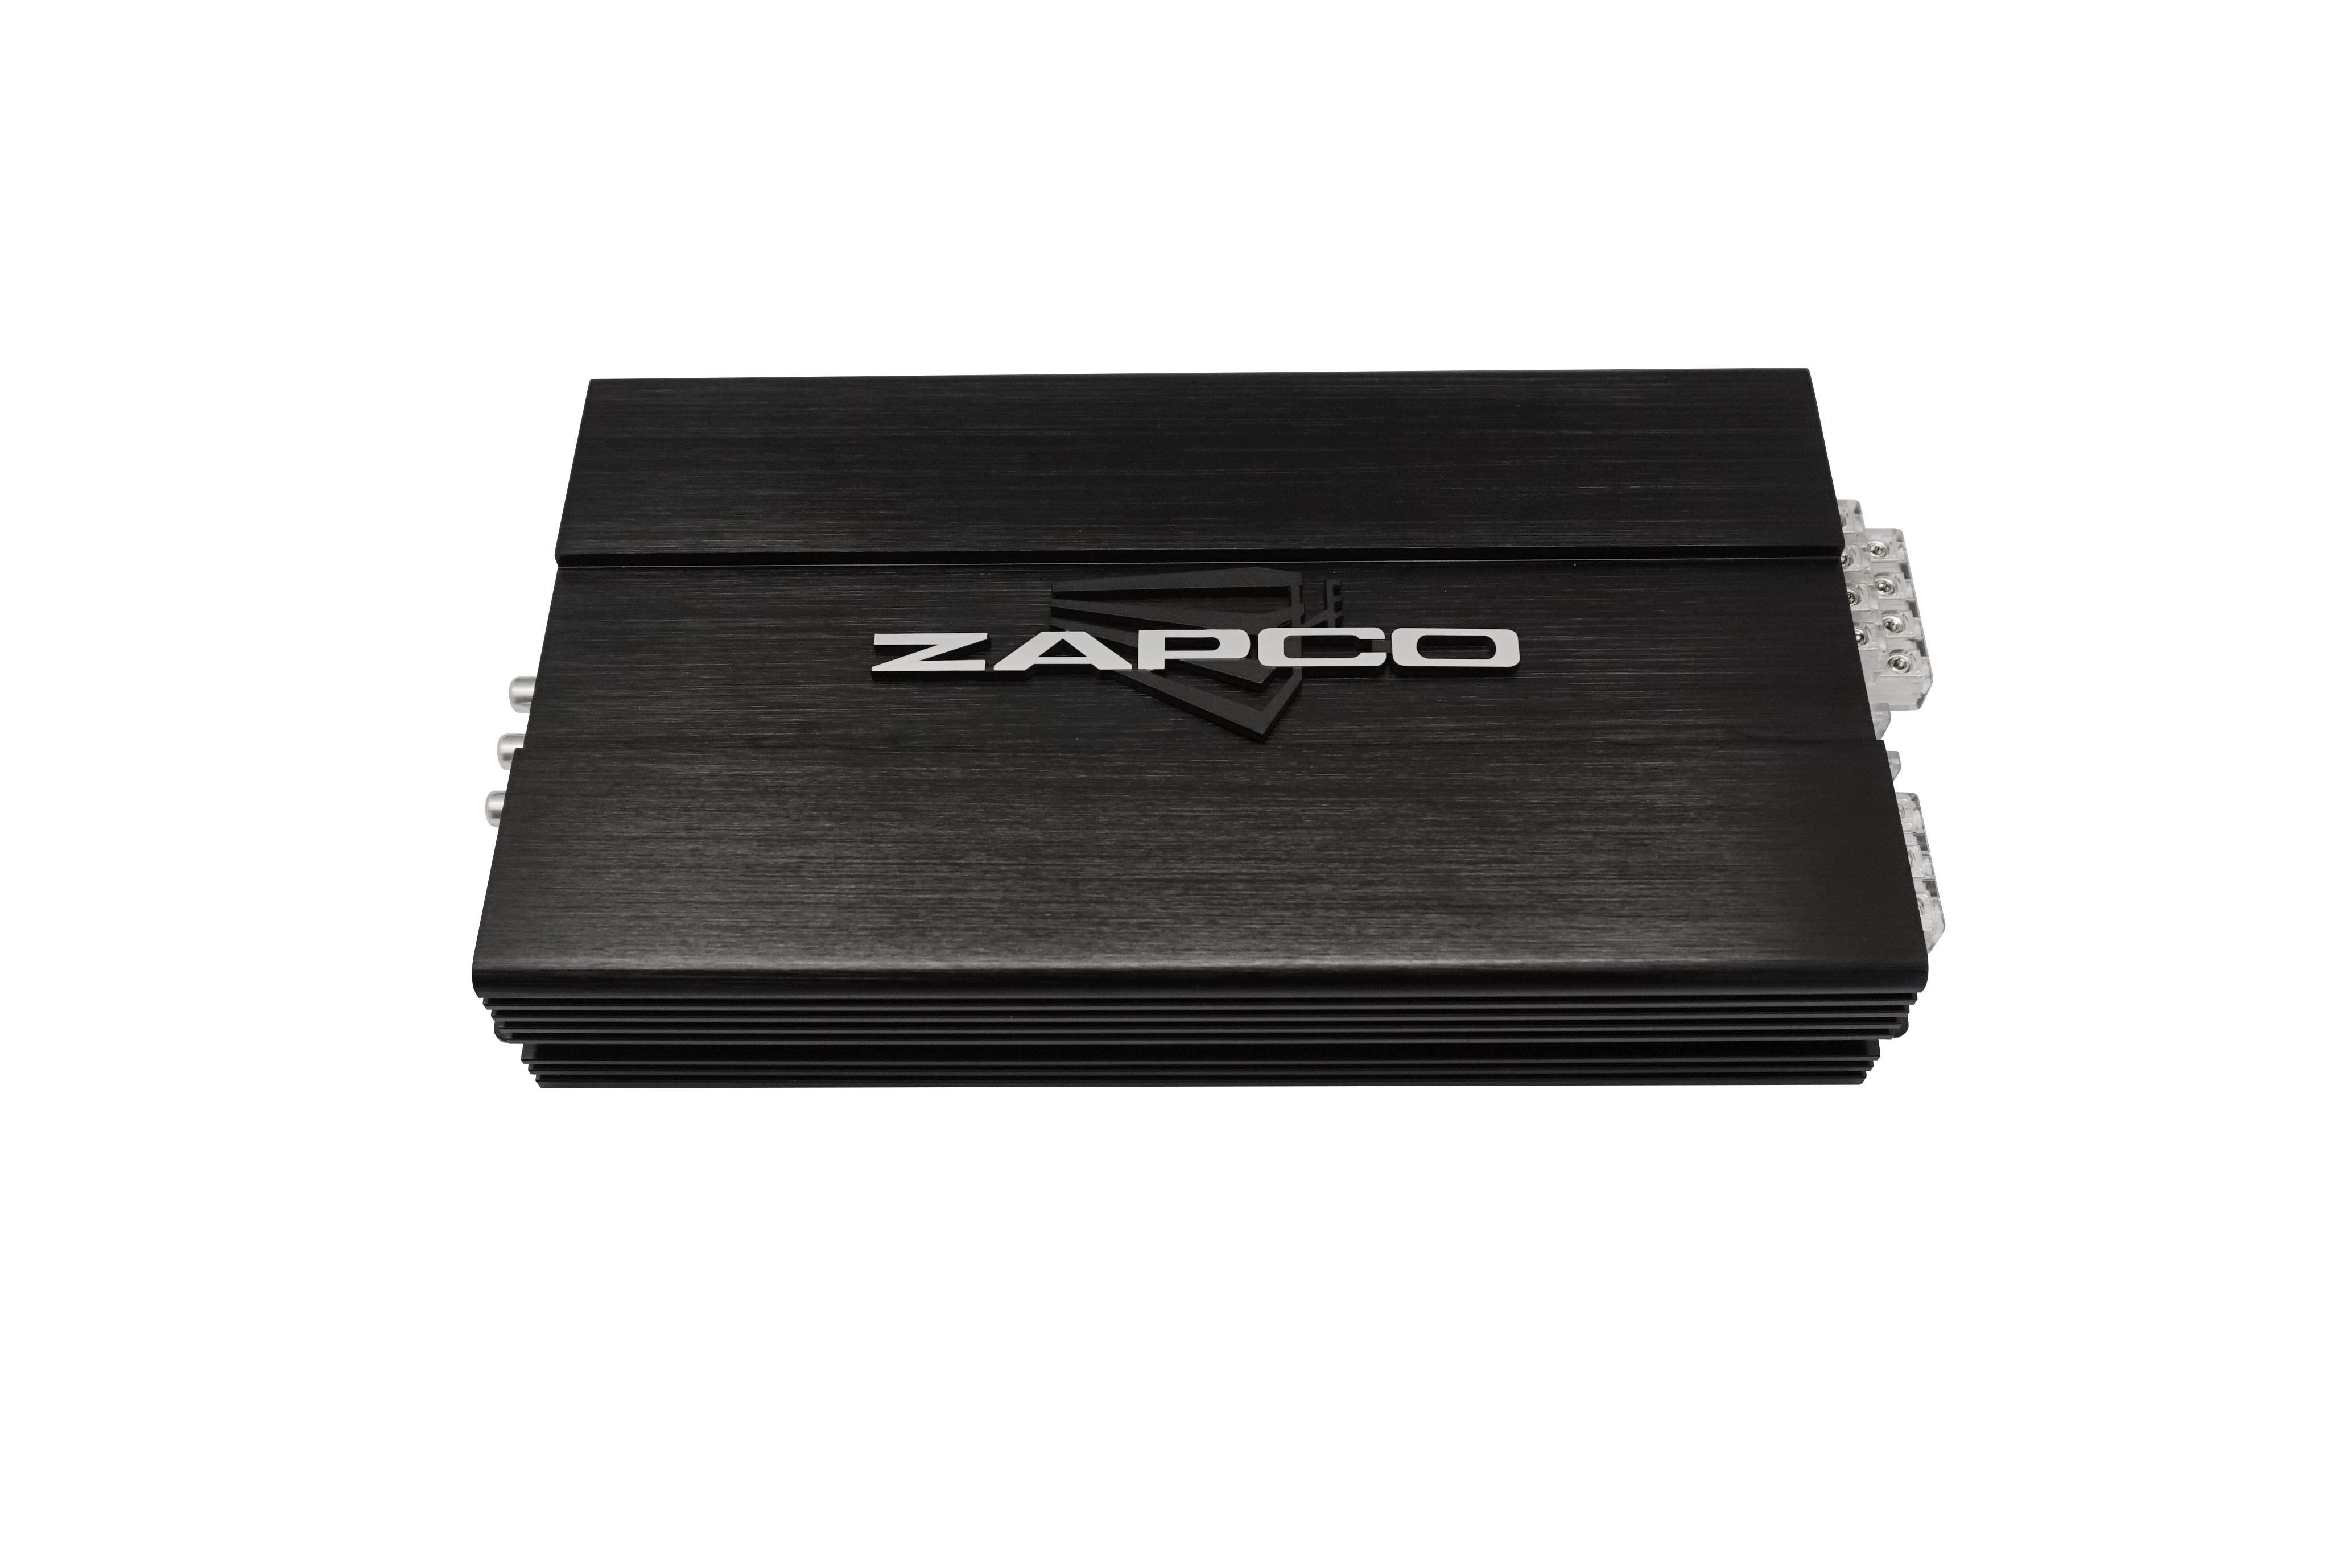 ZAPCO STXϵ ST-850XM